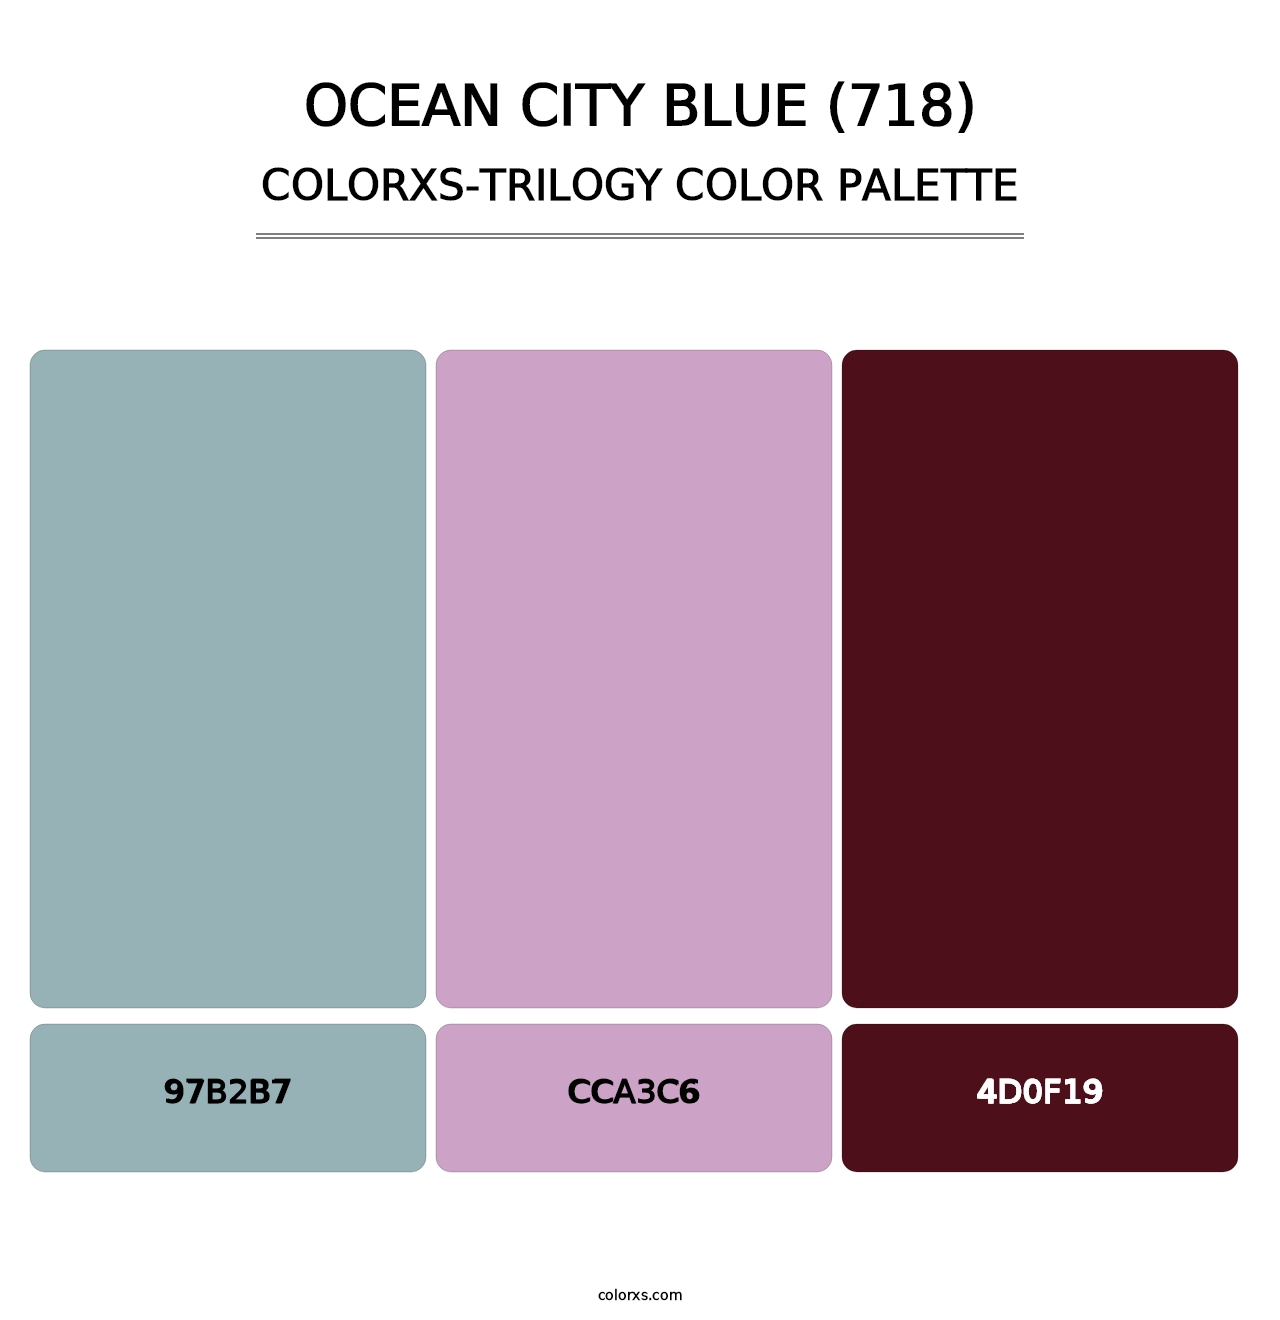 Ocean City Blue (718) - Colorxs Trilogy Palette